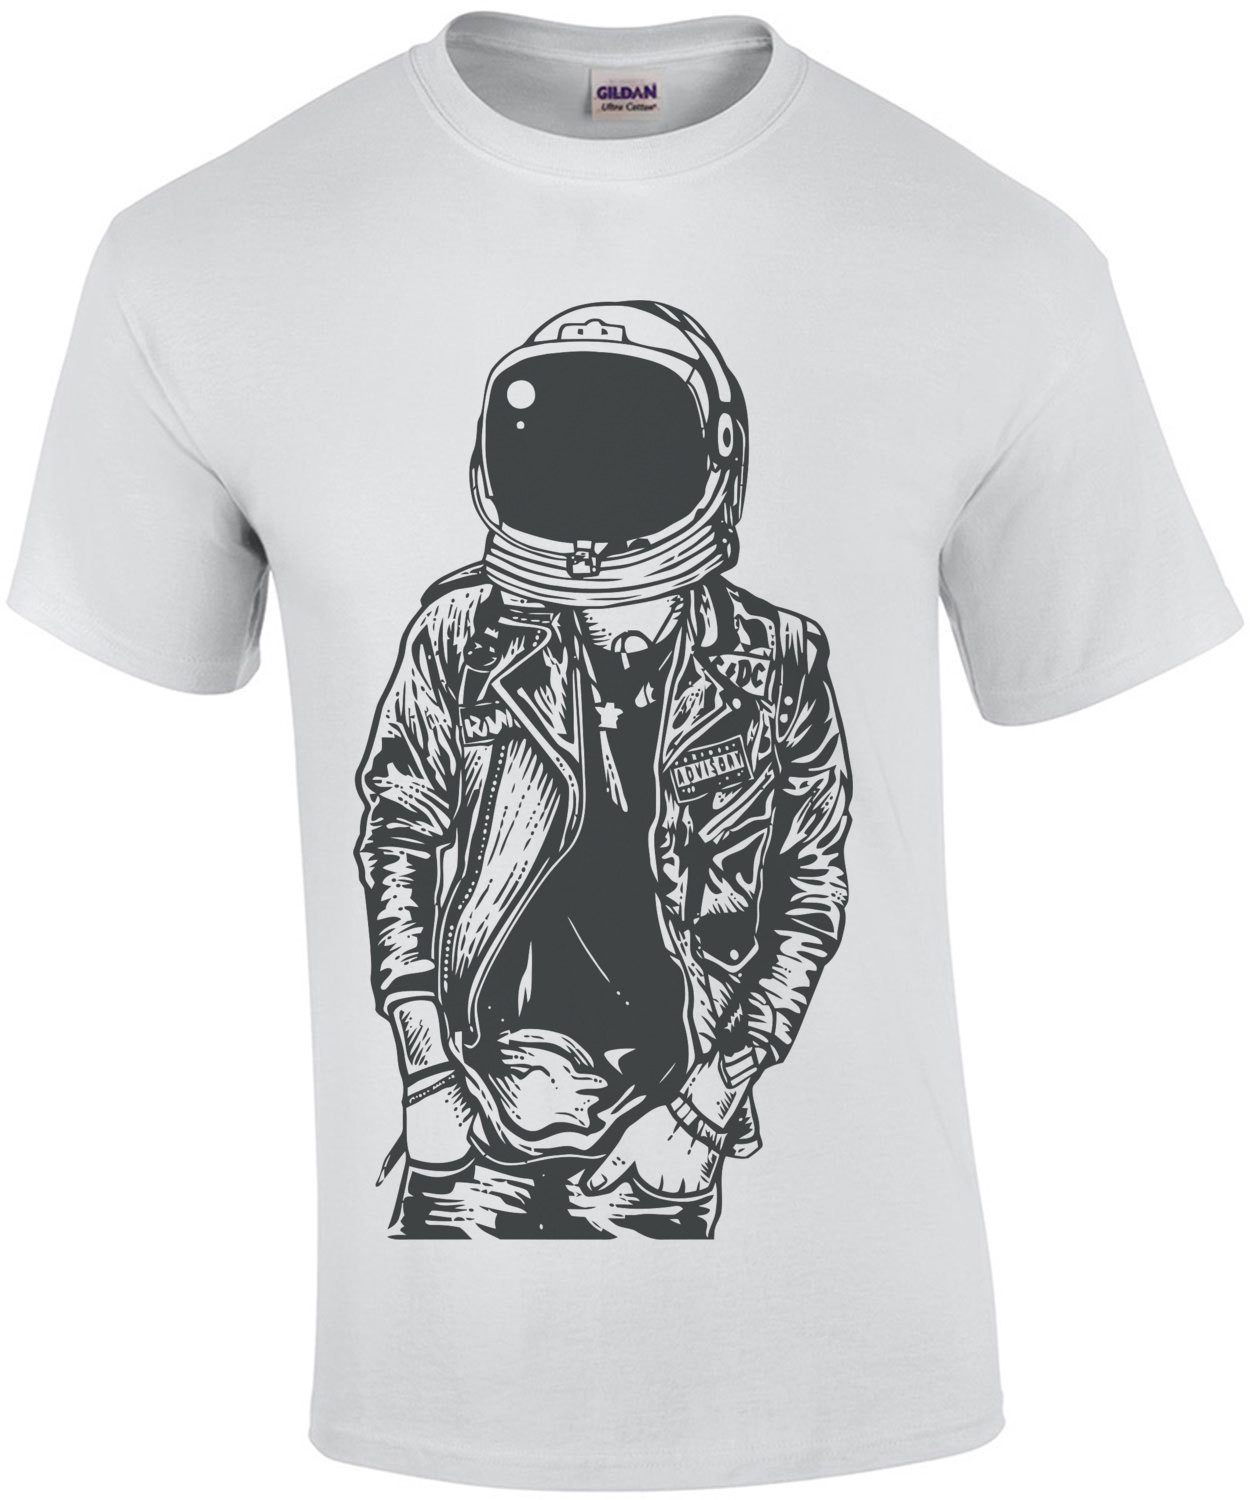 Punk Rock Astronaut T-Shirt